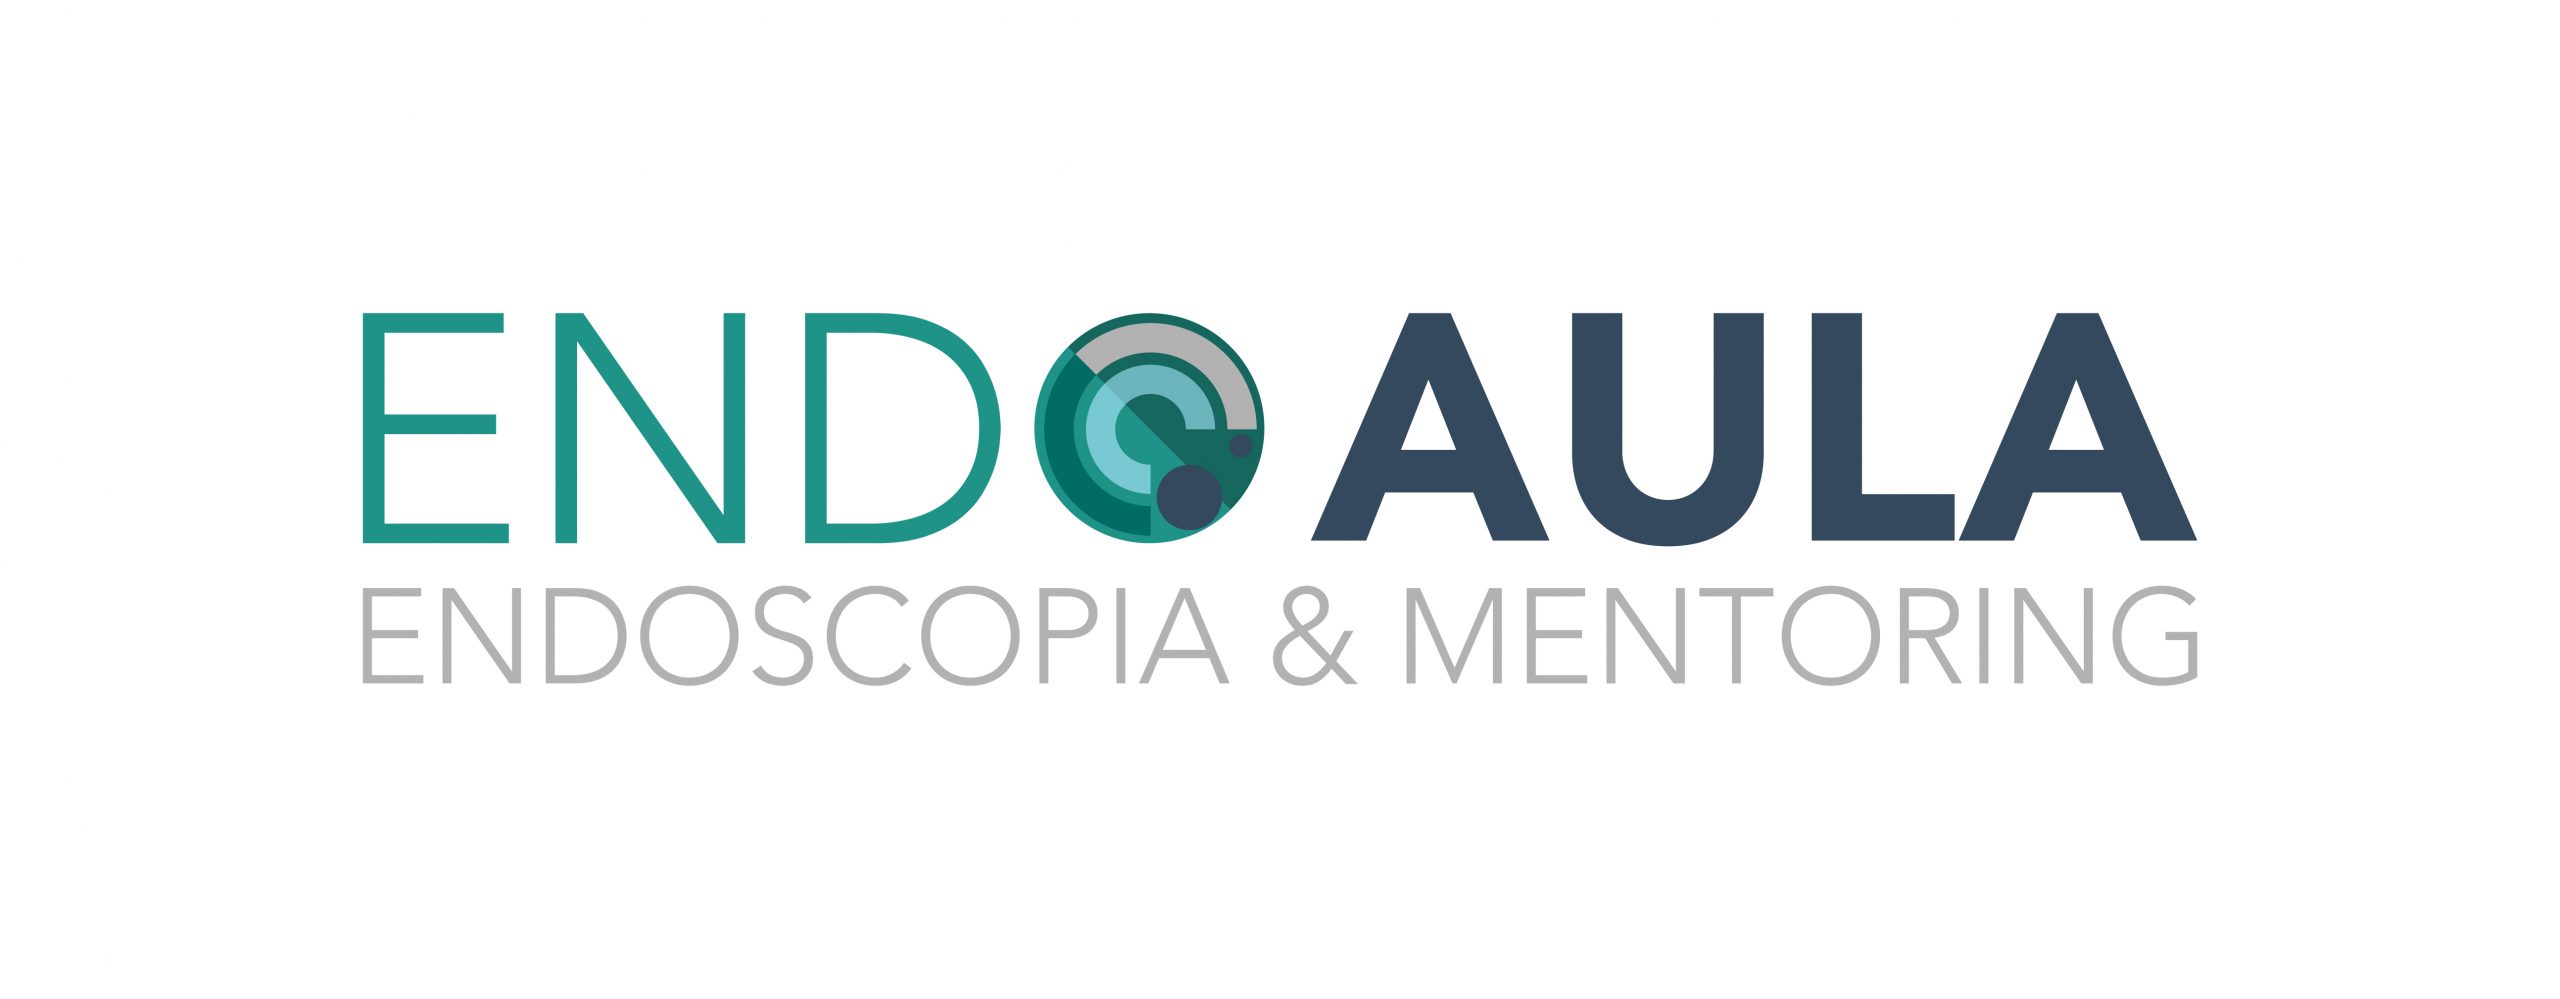 EndoAula | El aula virtual de Endoscopia y Mentoring